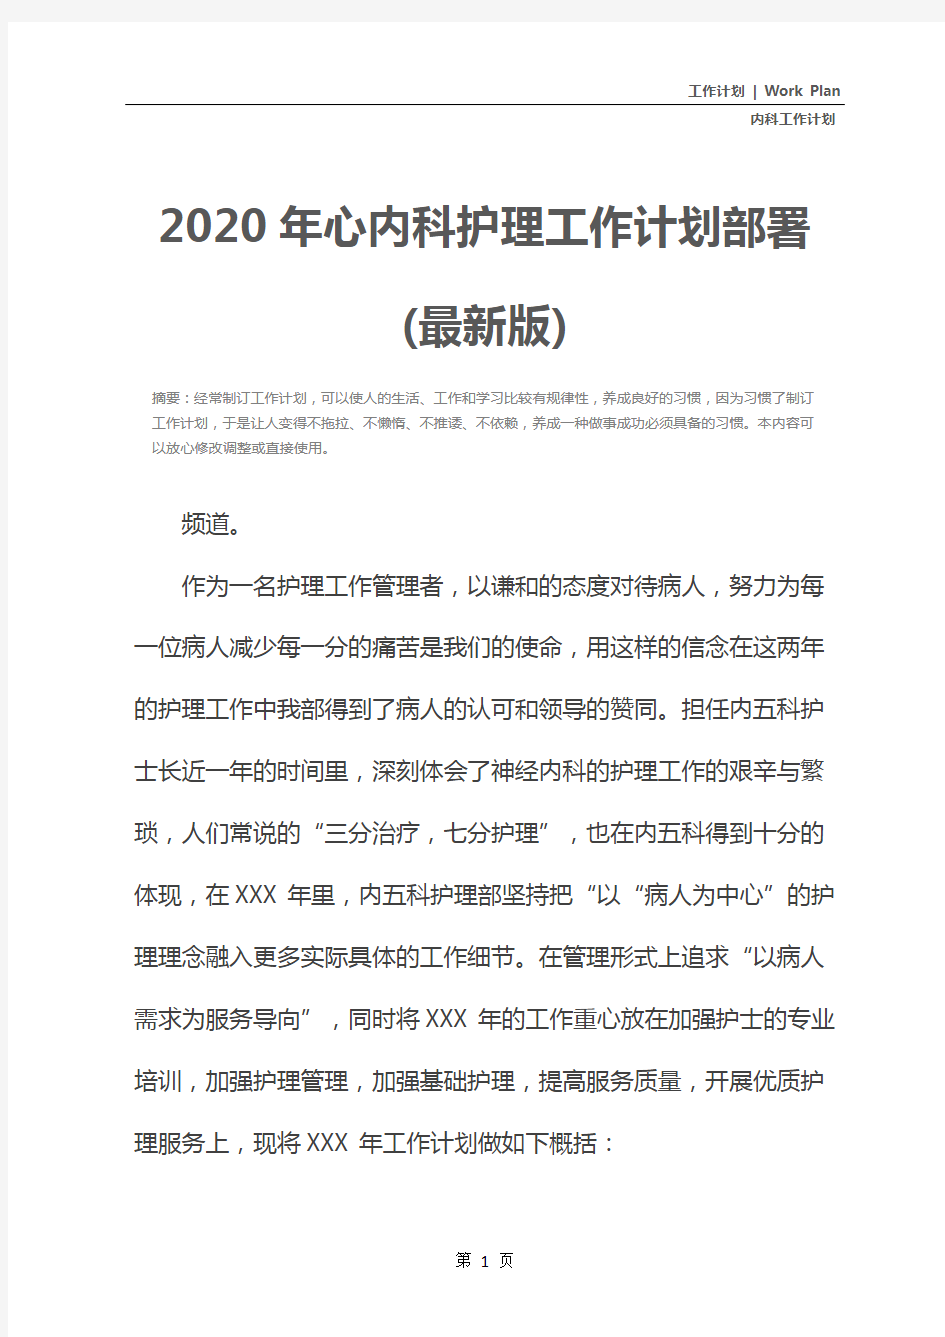 2020年心内科护理工作计划部署(最新版)